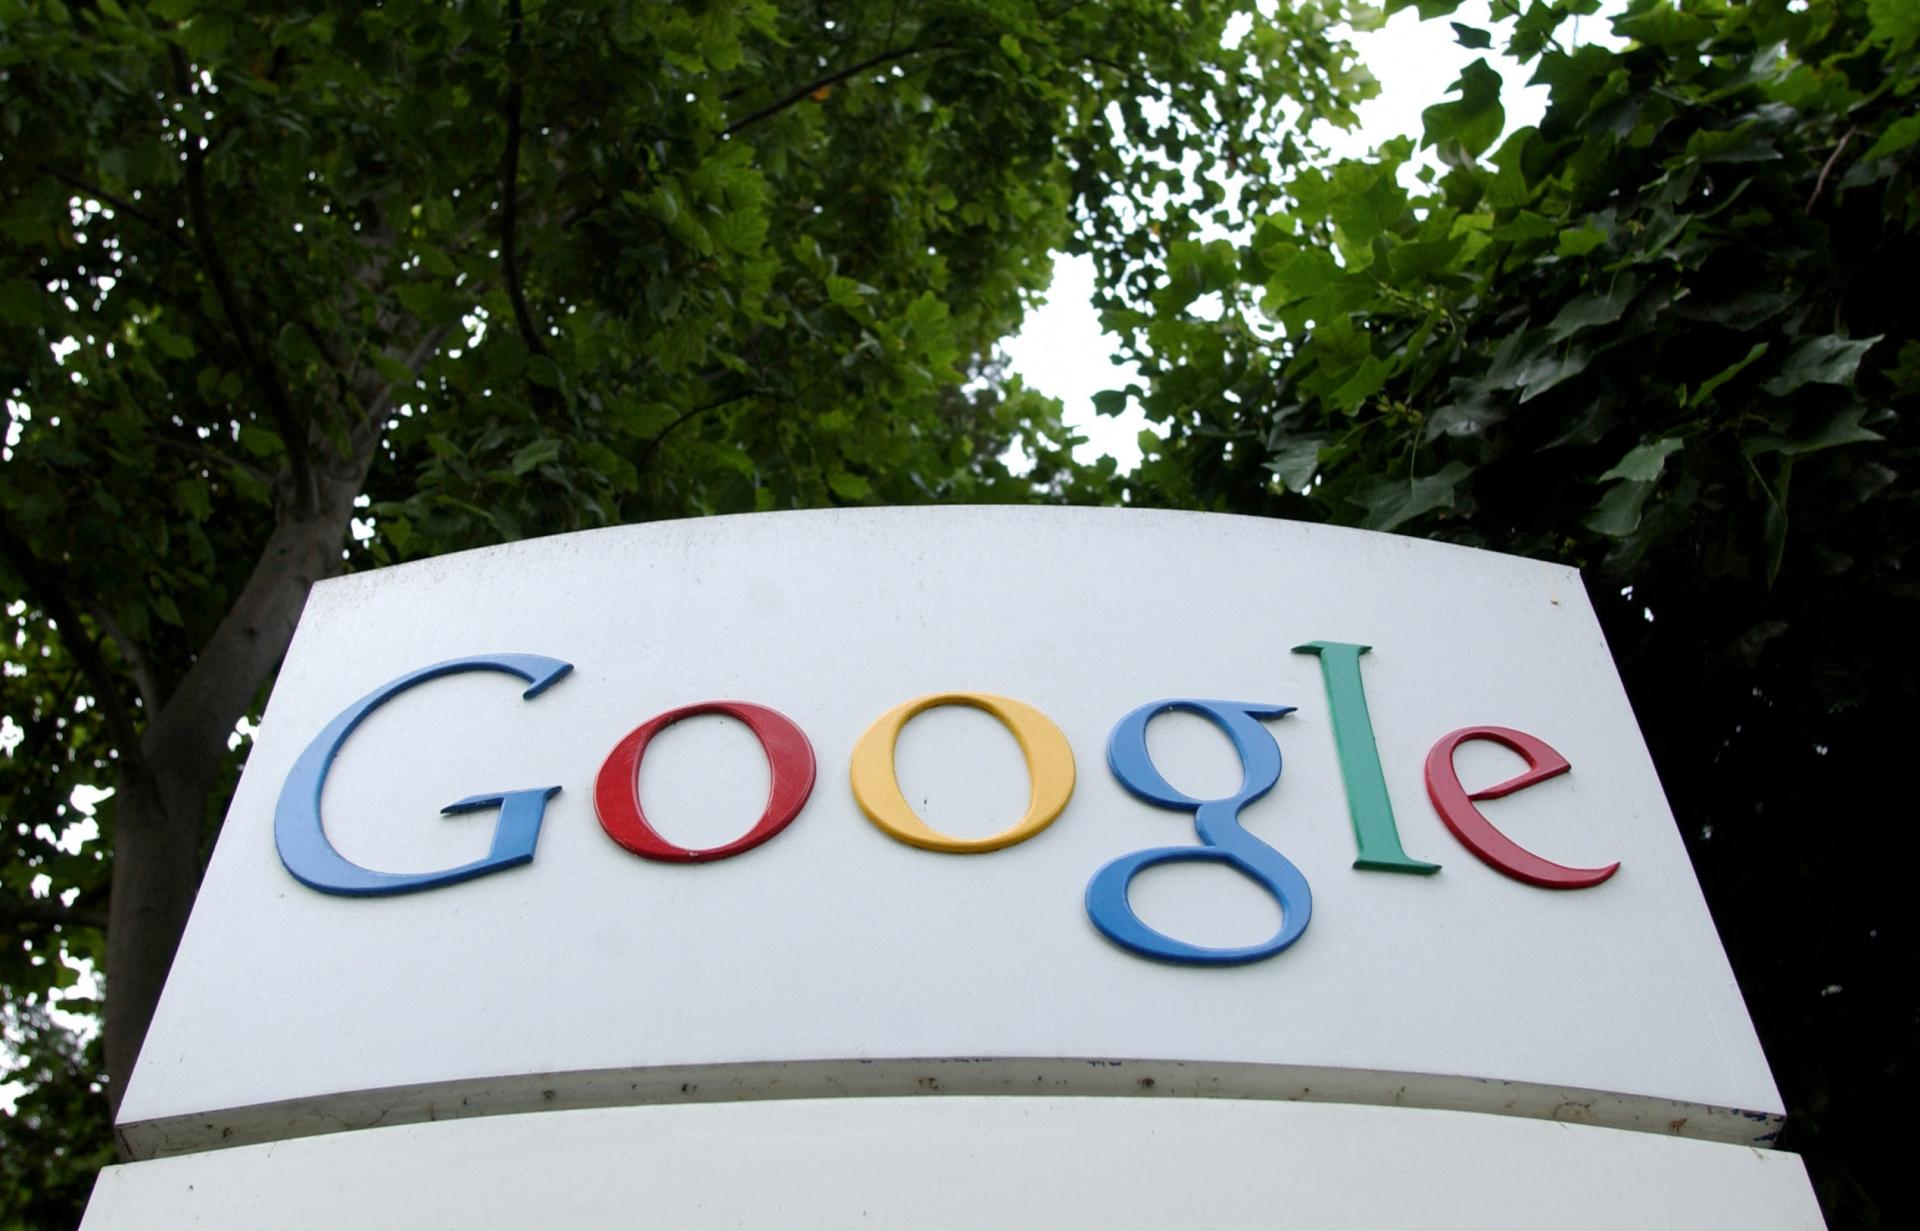 Žaloba požaduje od Google 3,4 miliardy za ušlé zisky vydavateľov. Je to oportunistický krok, reaguje firma